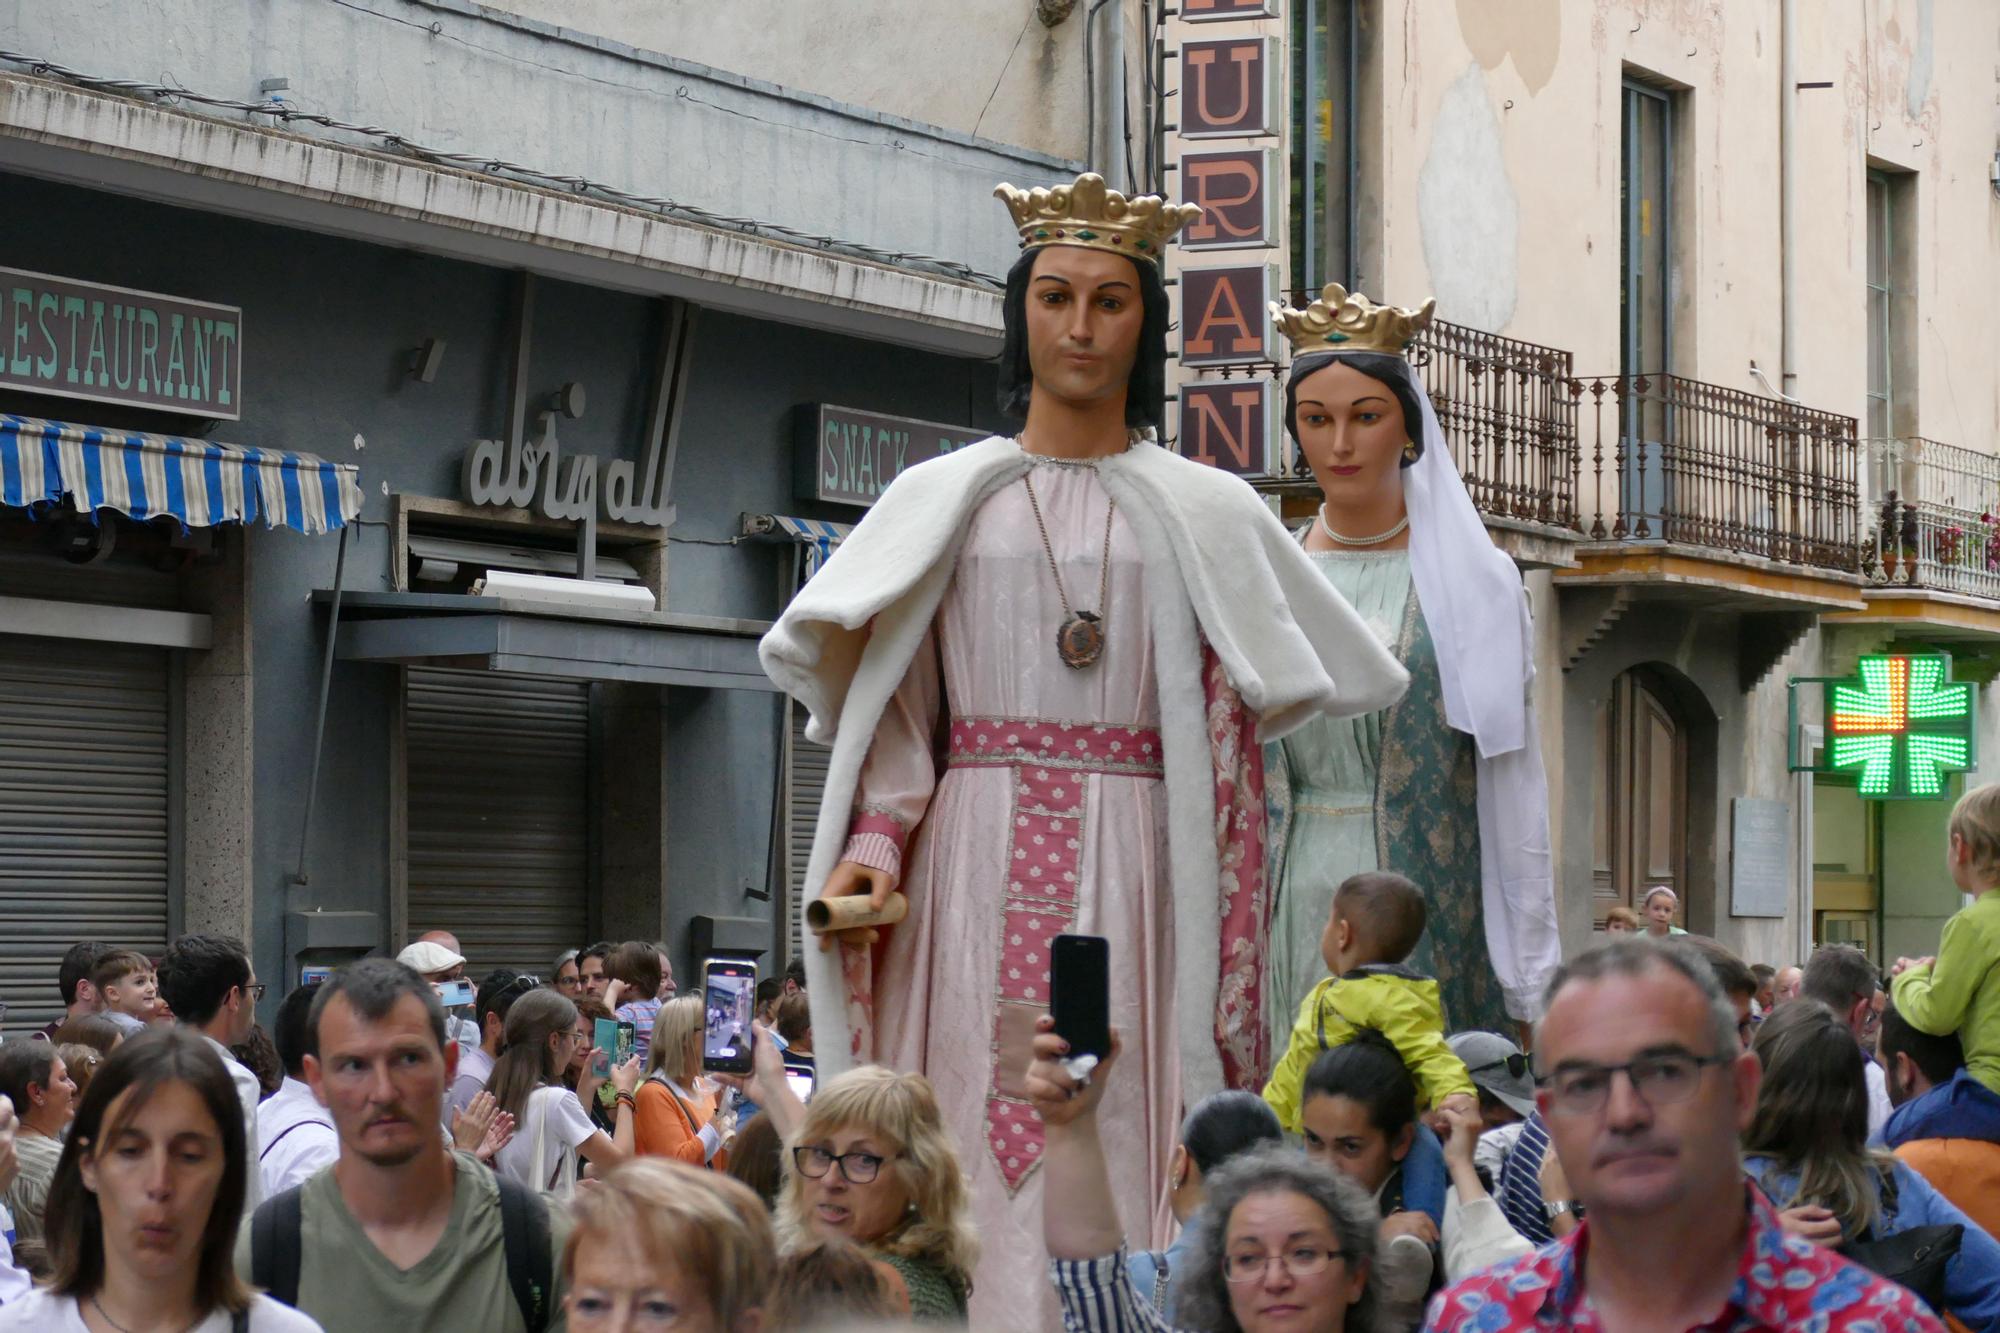 Les imatges del Seguici i pregó de les festes i fires de Santa Creu de Figueres